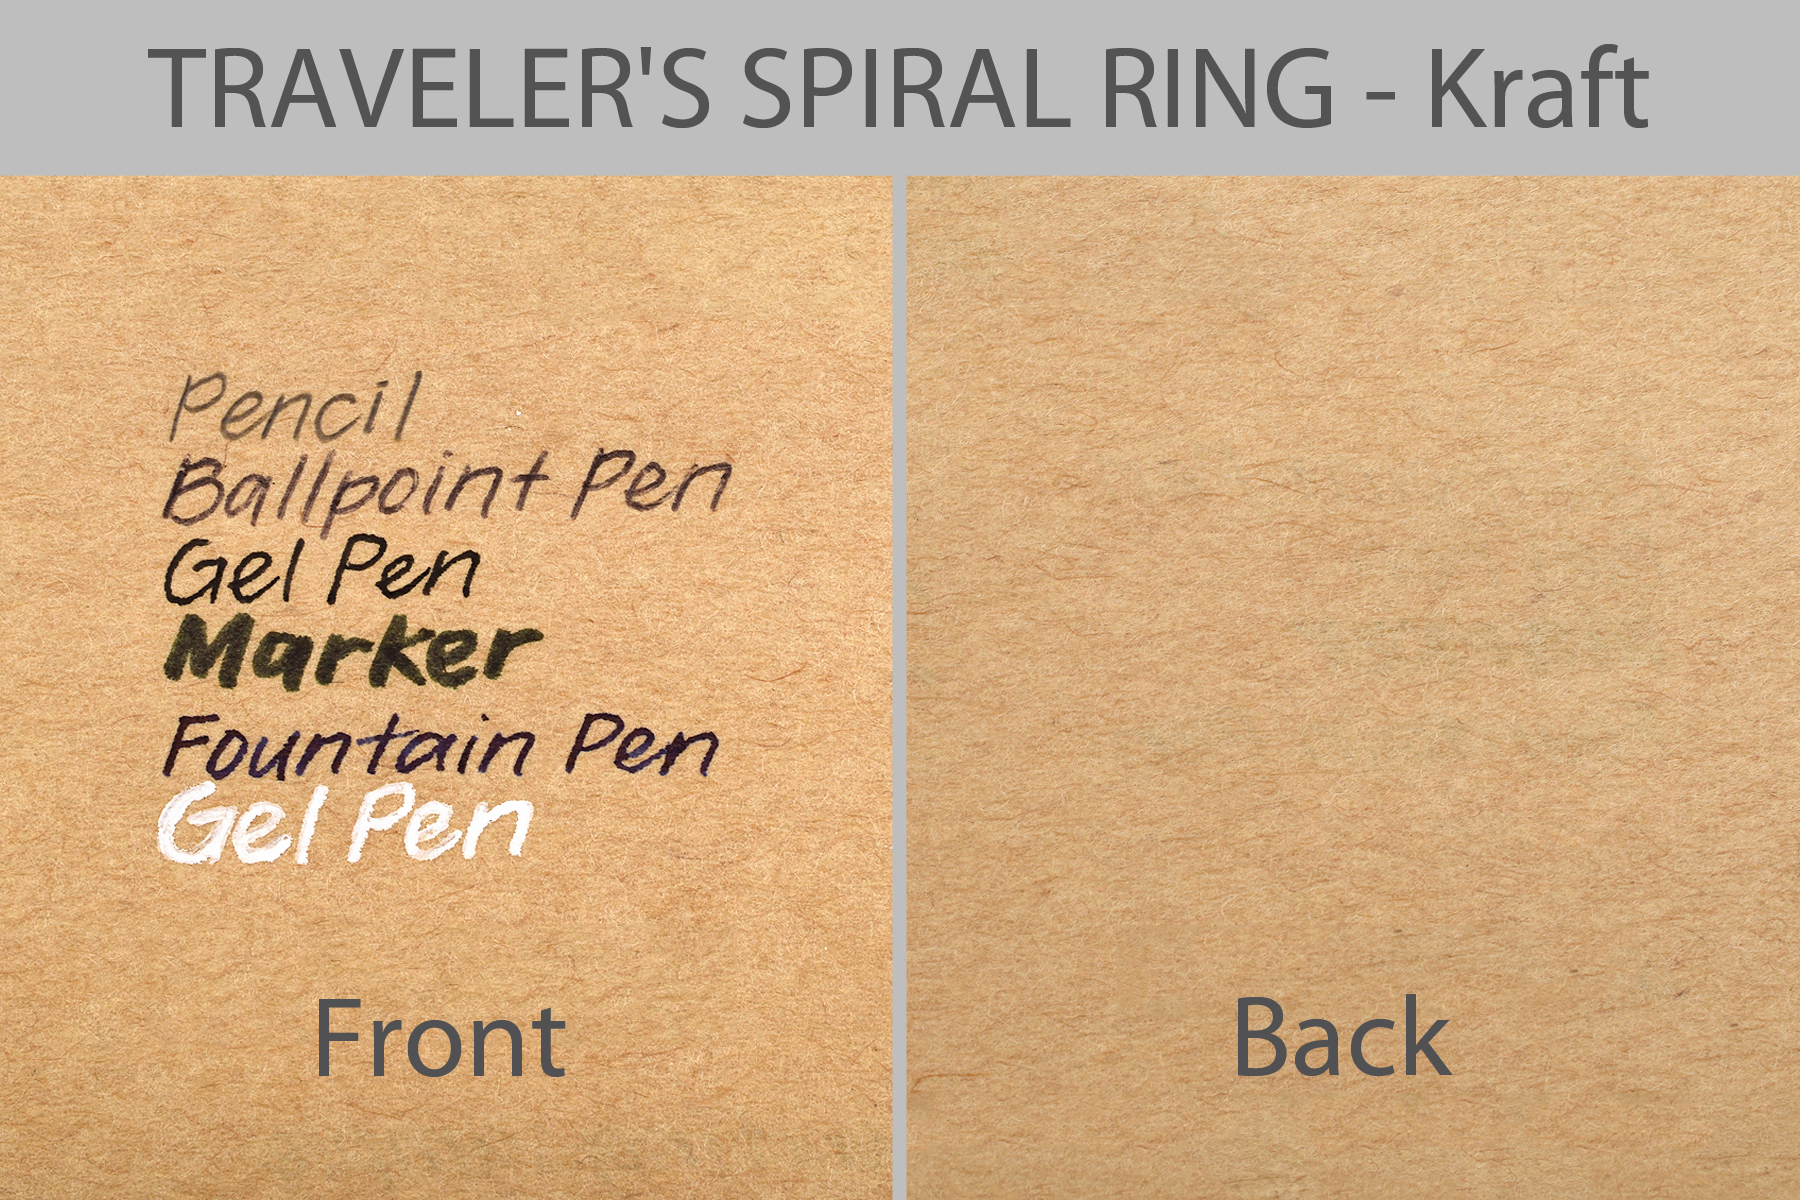 TRAVELER'S Kraft SPIRAL RING writing sample.